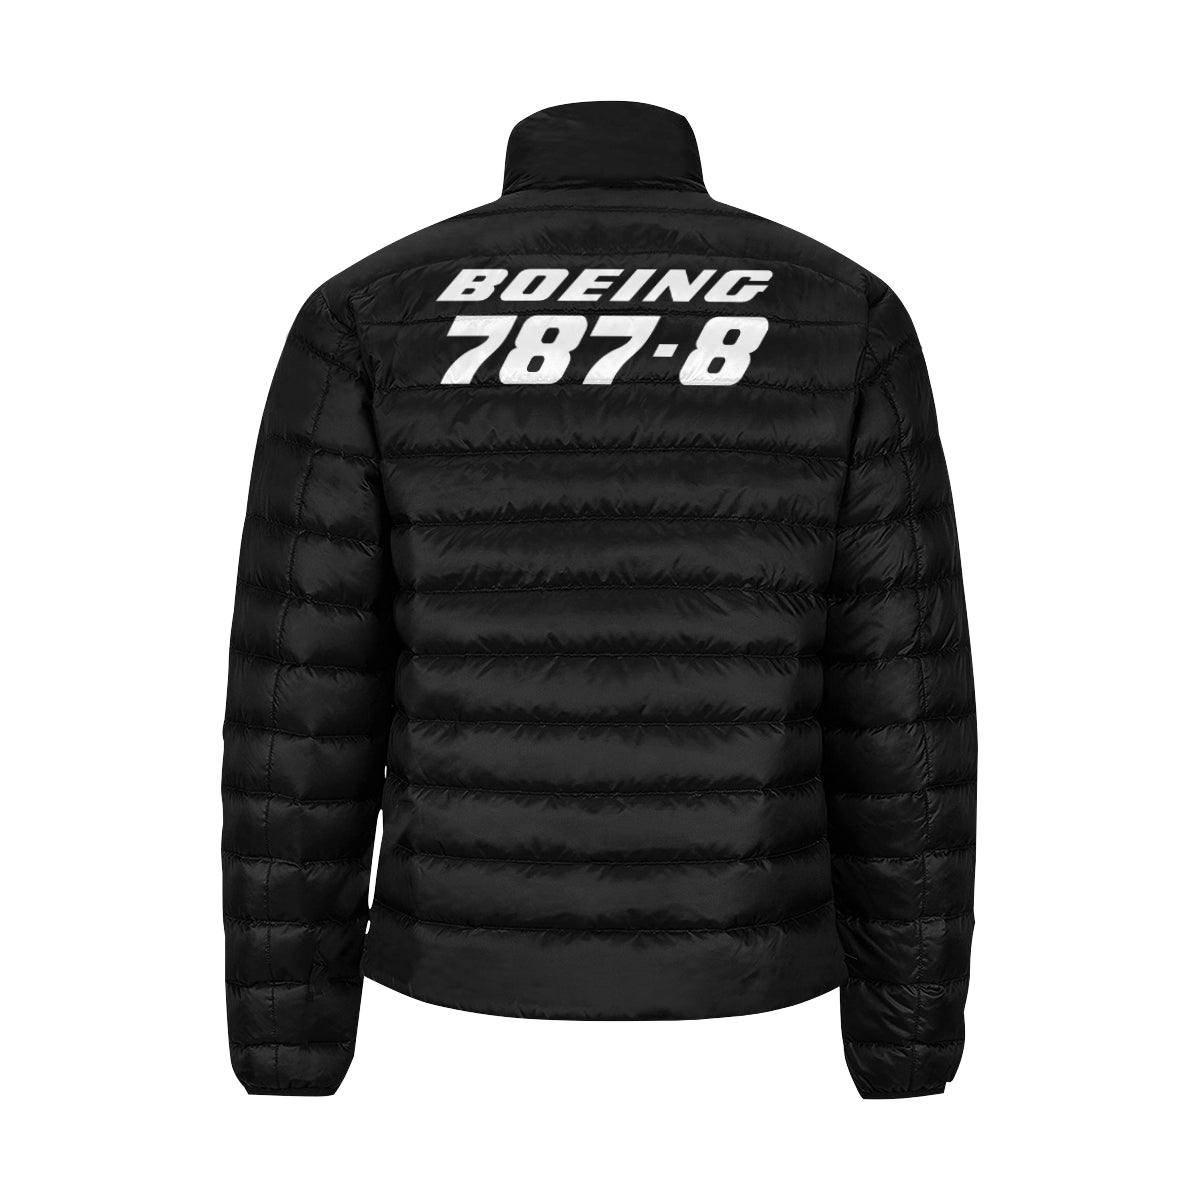 BOEING 787-8 Men's Stand Collar Padded Jacket e-joyer